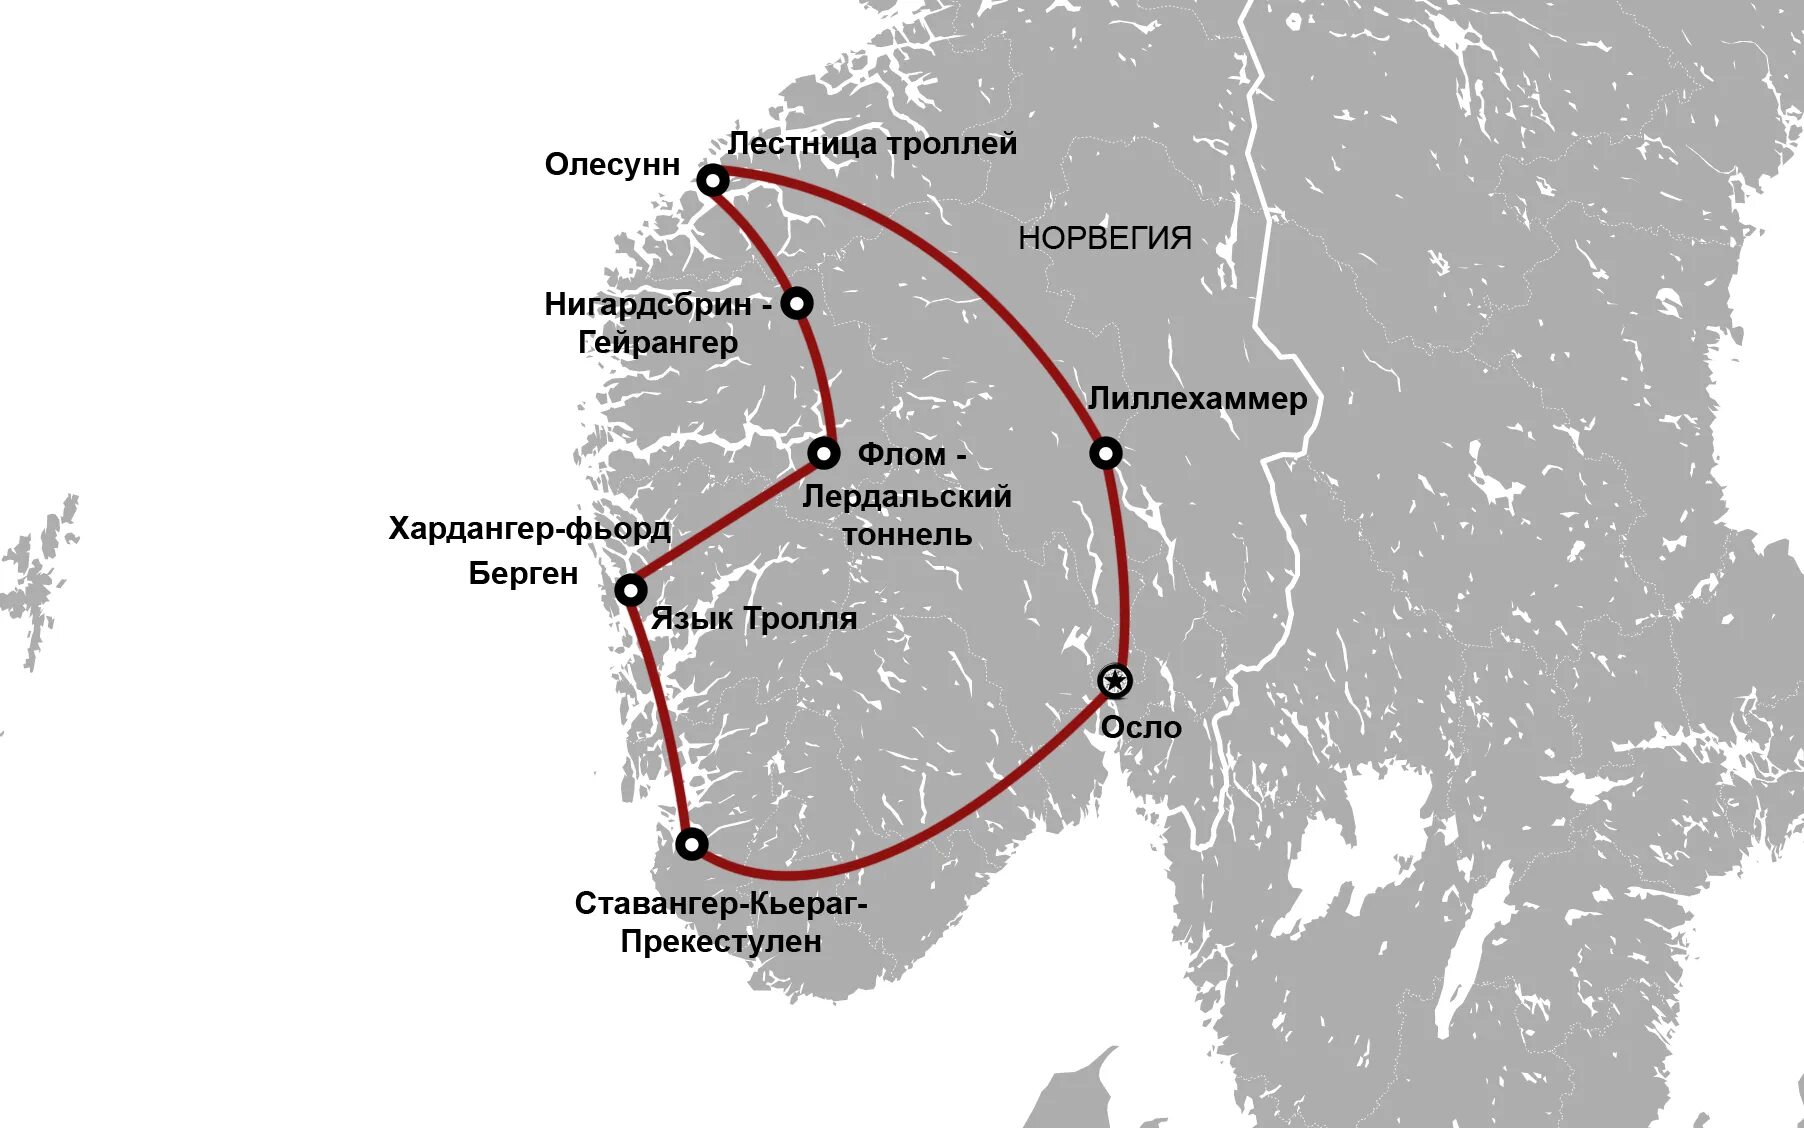 Туристический маршрут по северной америке. Гейрангер-Фьорд Норвегия на карте. Лердальский тоннель в Норвегии на карте. Фьорды Норвегии на карте. Флом Норвегия на карте.